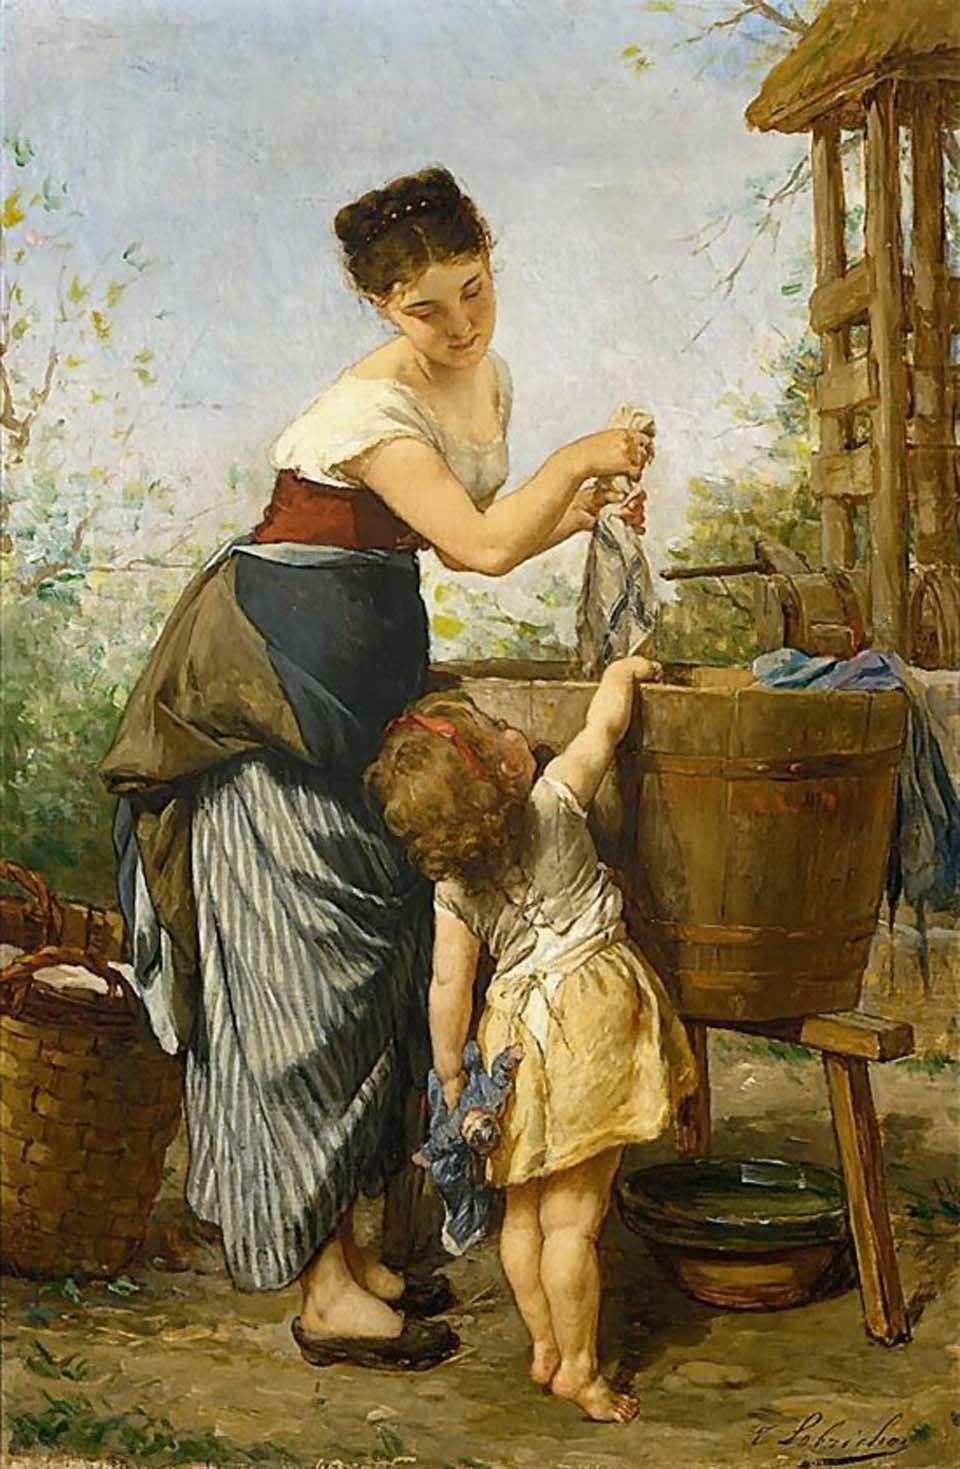 Mother's little helper